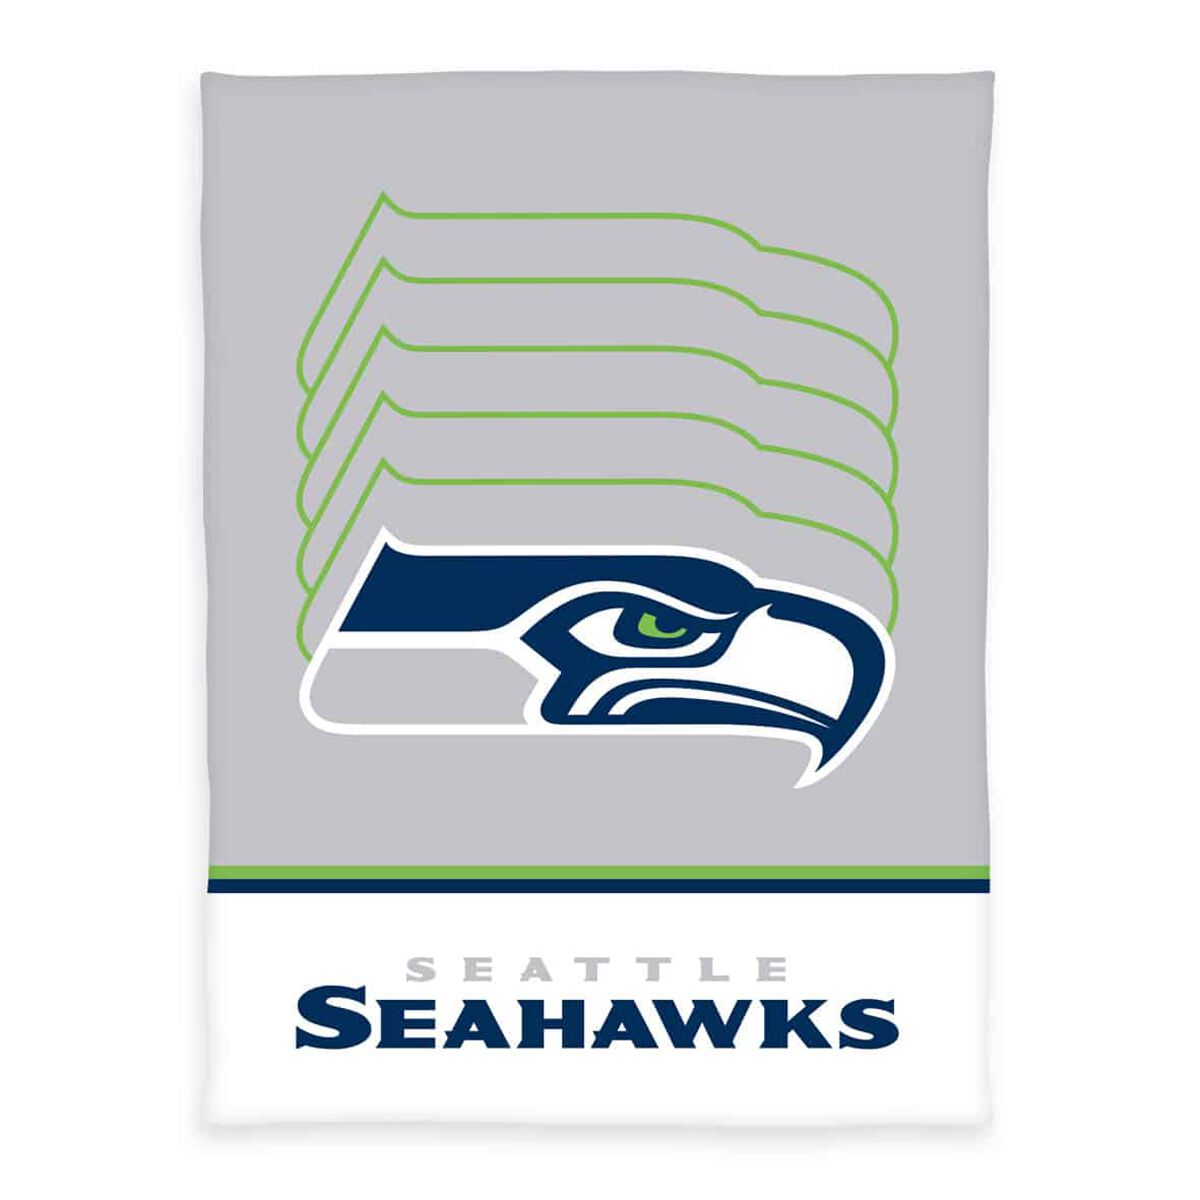 NFL - Seattle Seahawks - Flauschdecke - Decke - multicolor